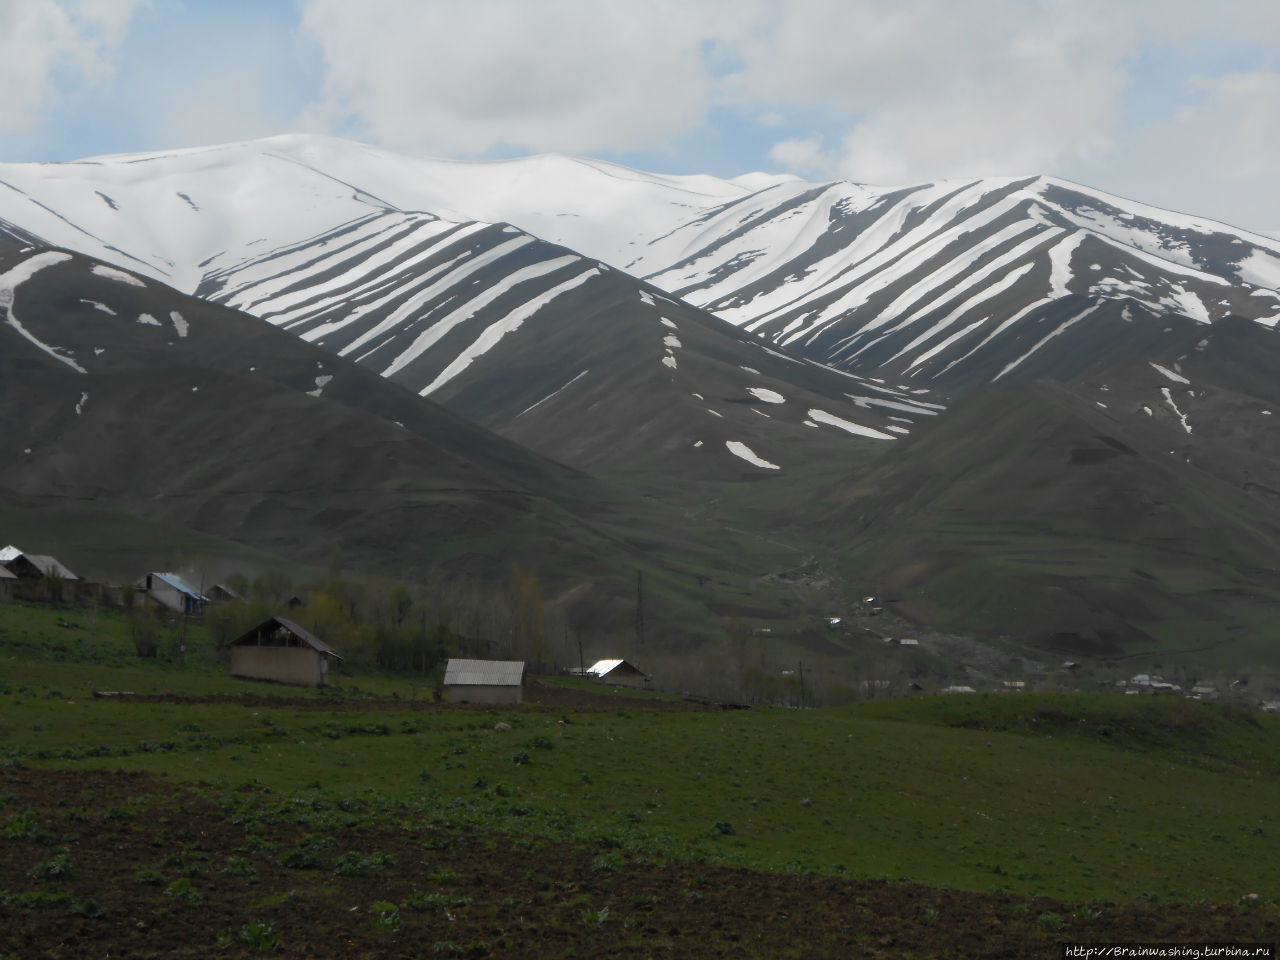 Автостопом по Памирскому тракту. Часть 2. Горно-Бадахшанская область, Таджикистан